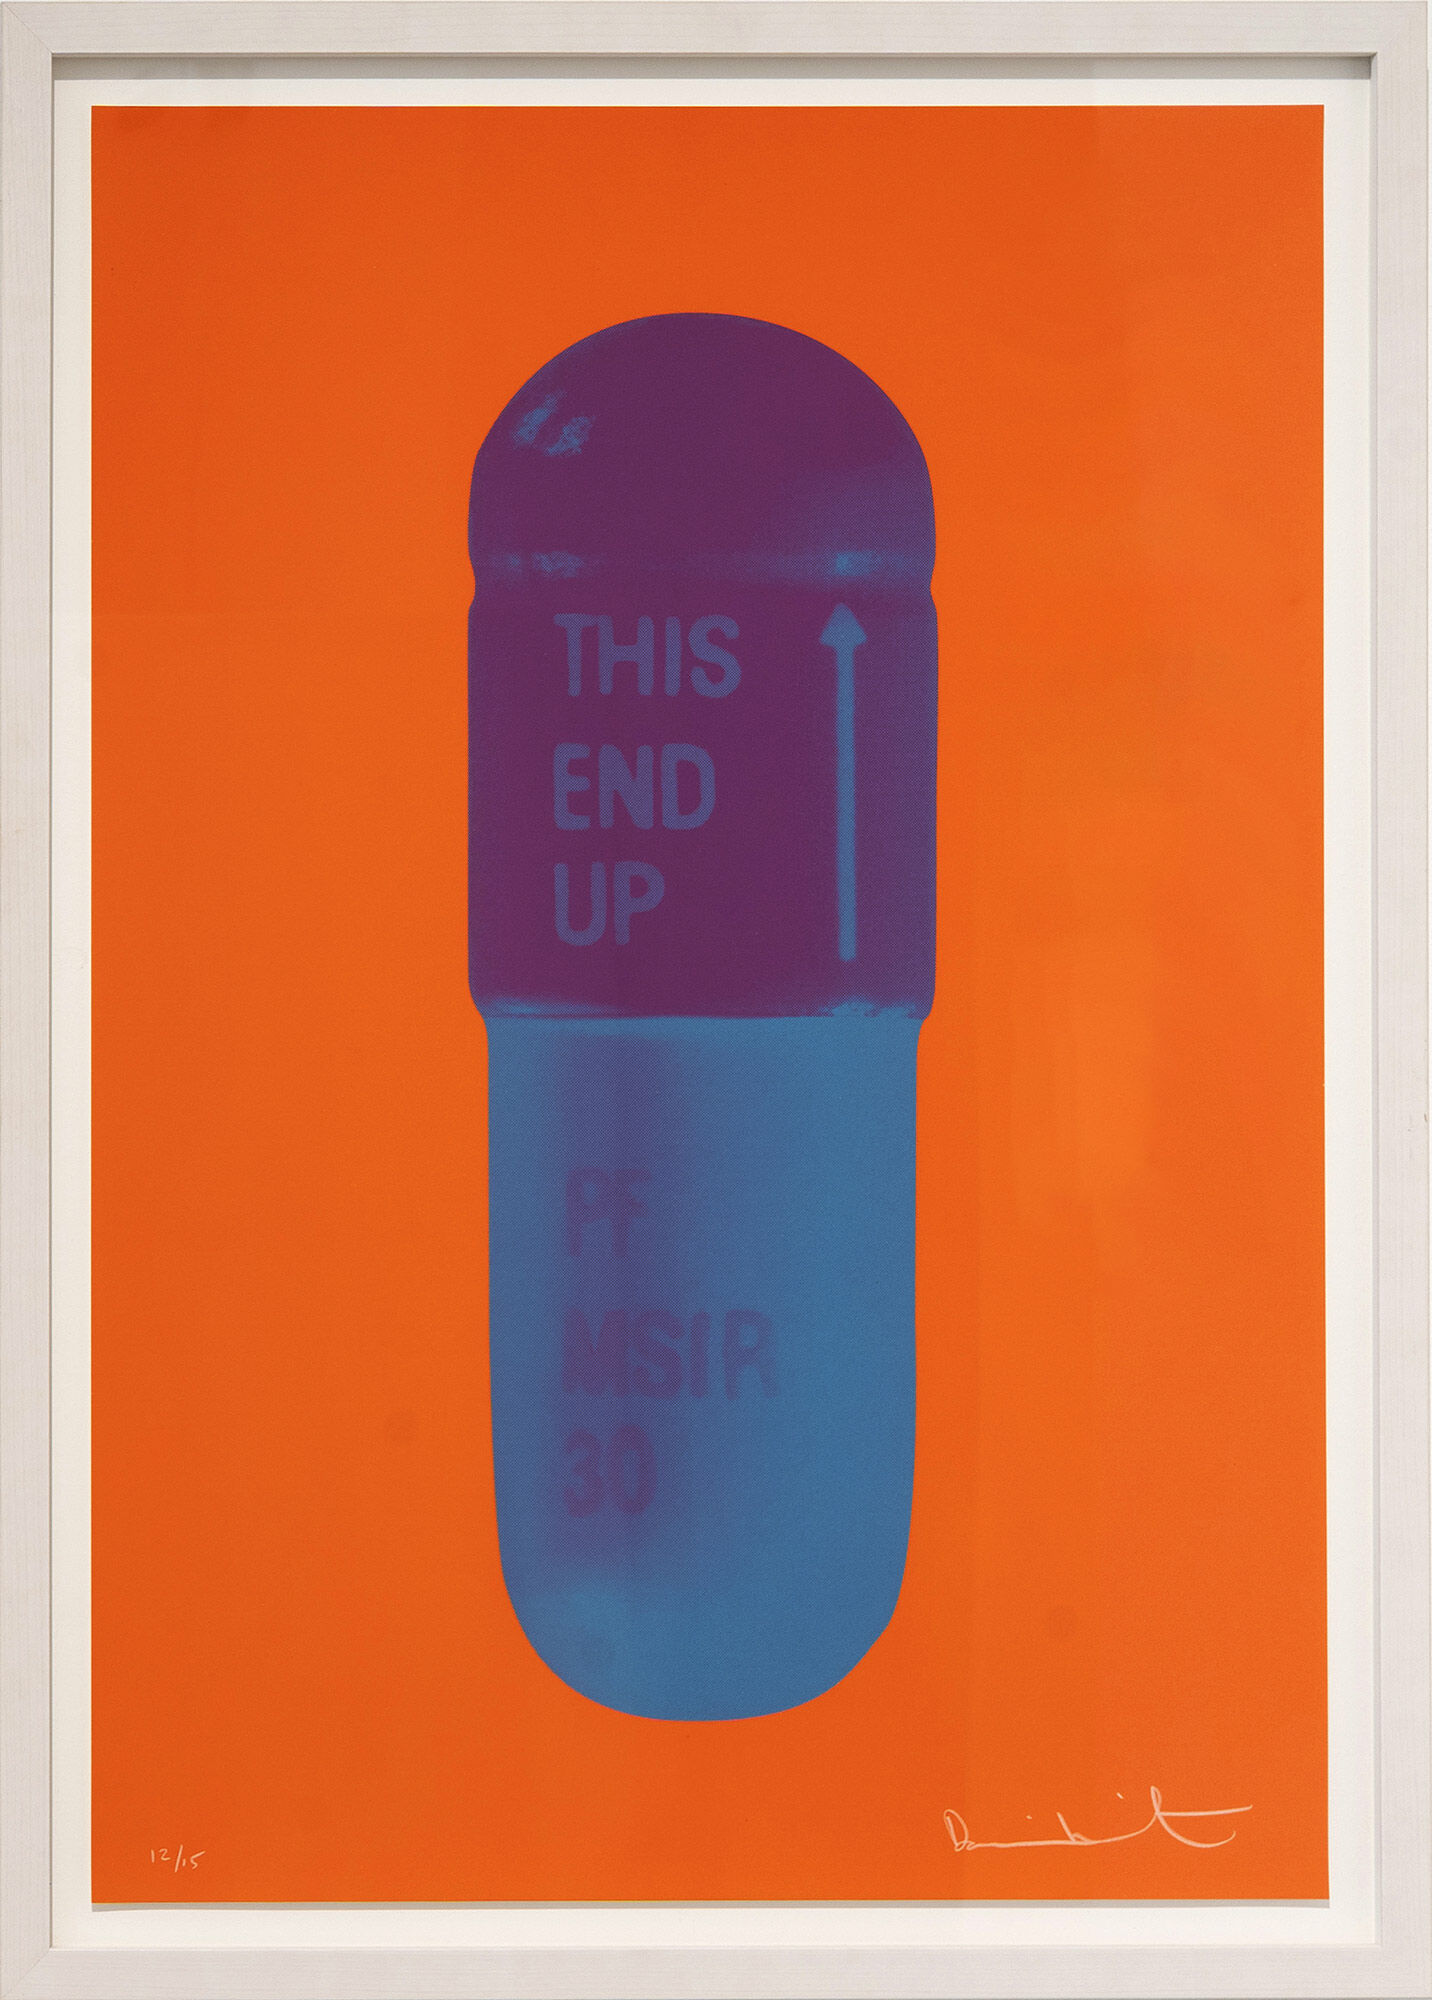 Bild "The Cure - Bright Orange/Orchid/Ari Force Blue" (2014) von Damien Hirst